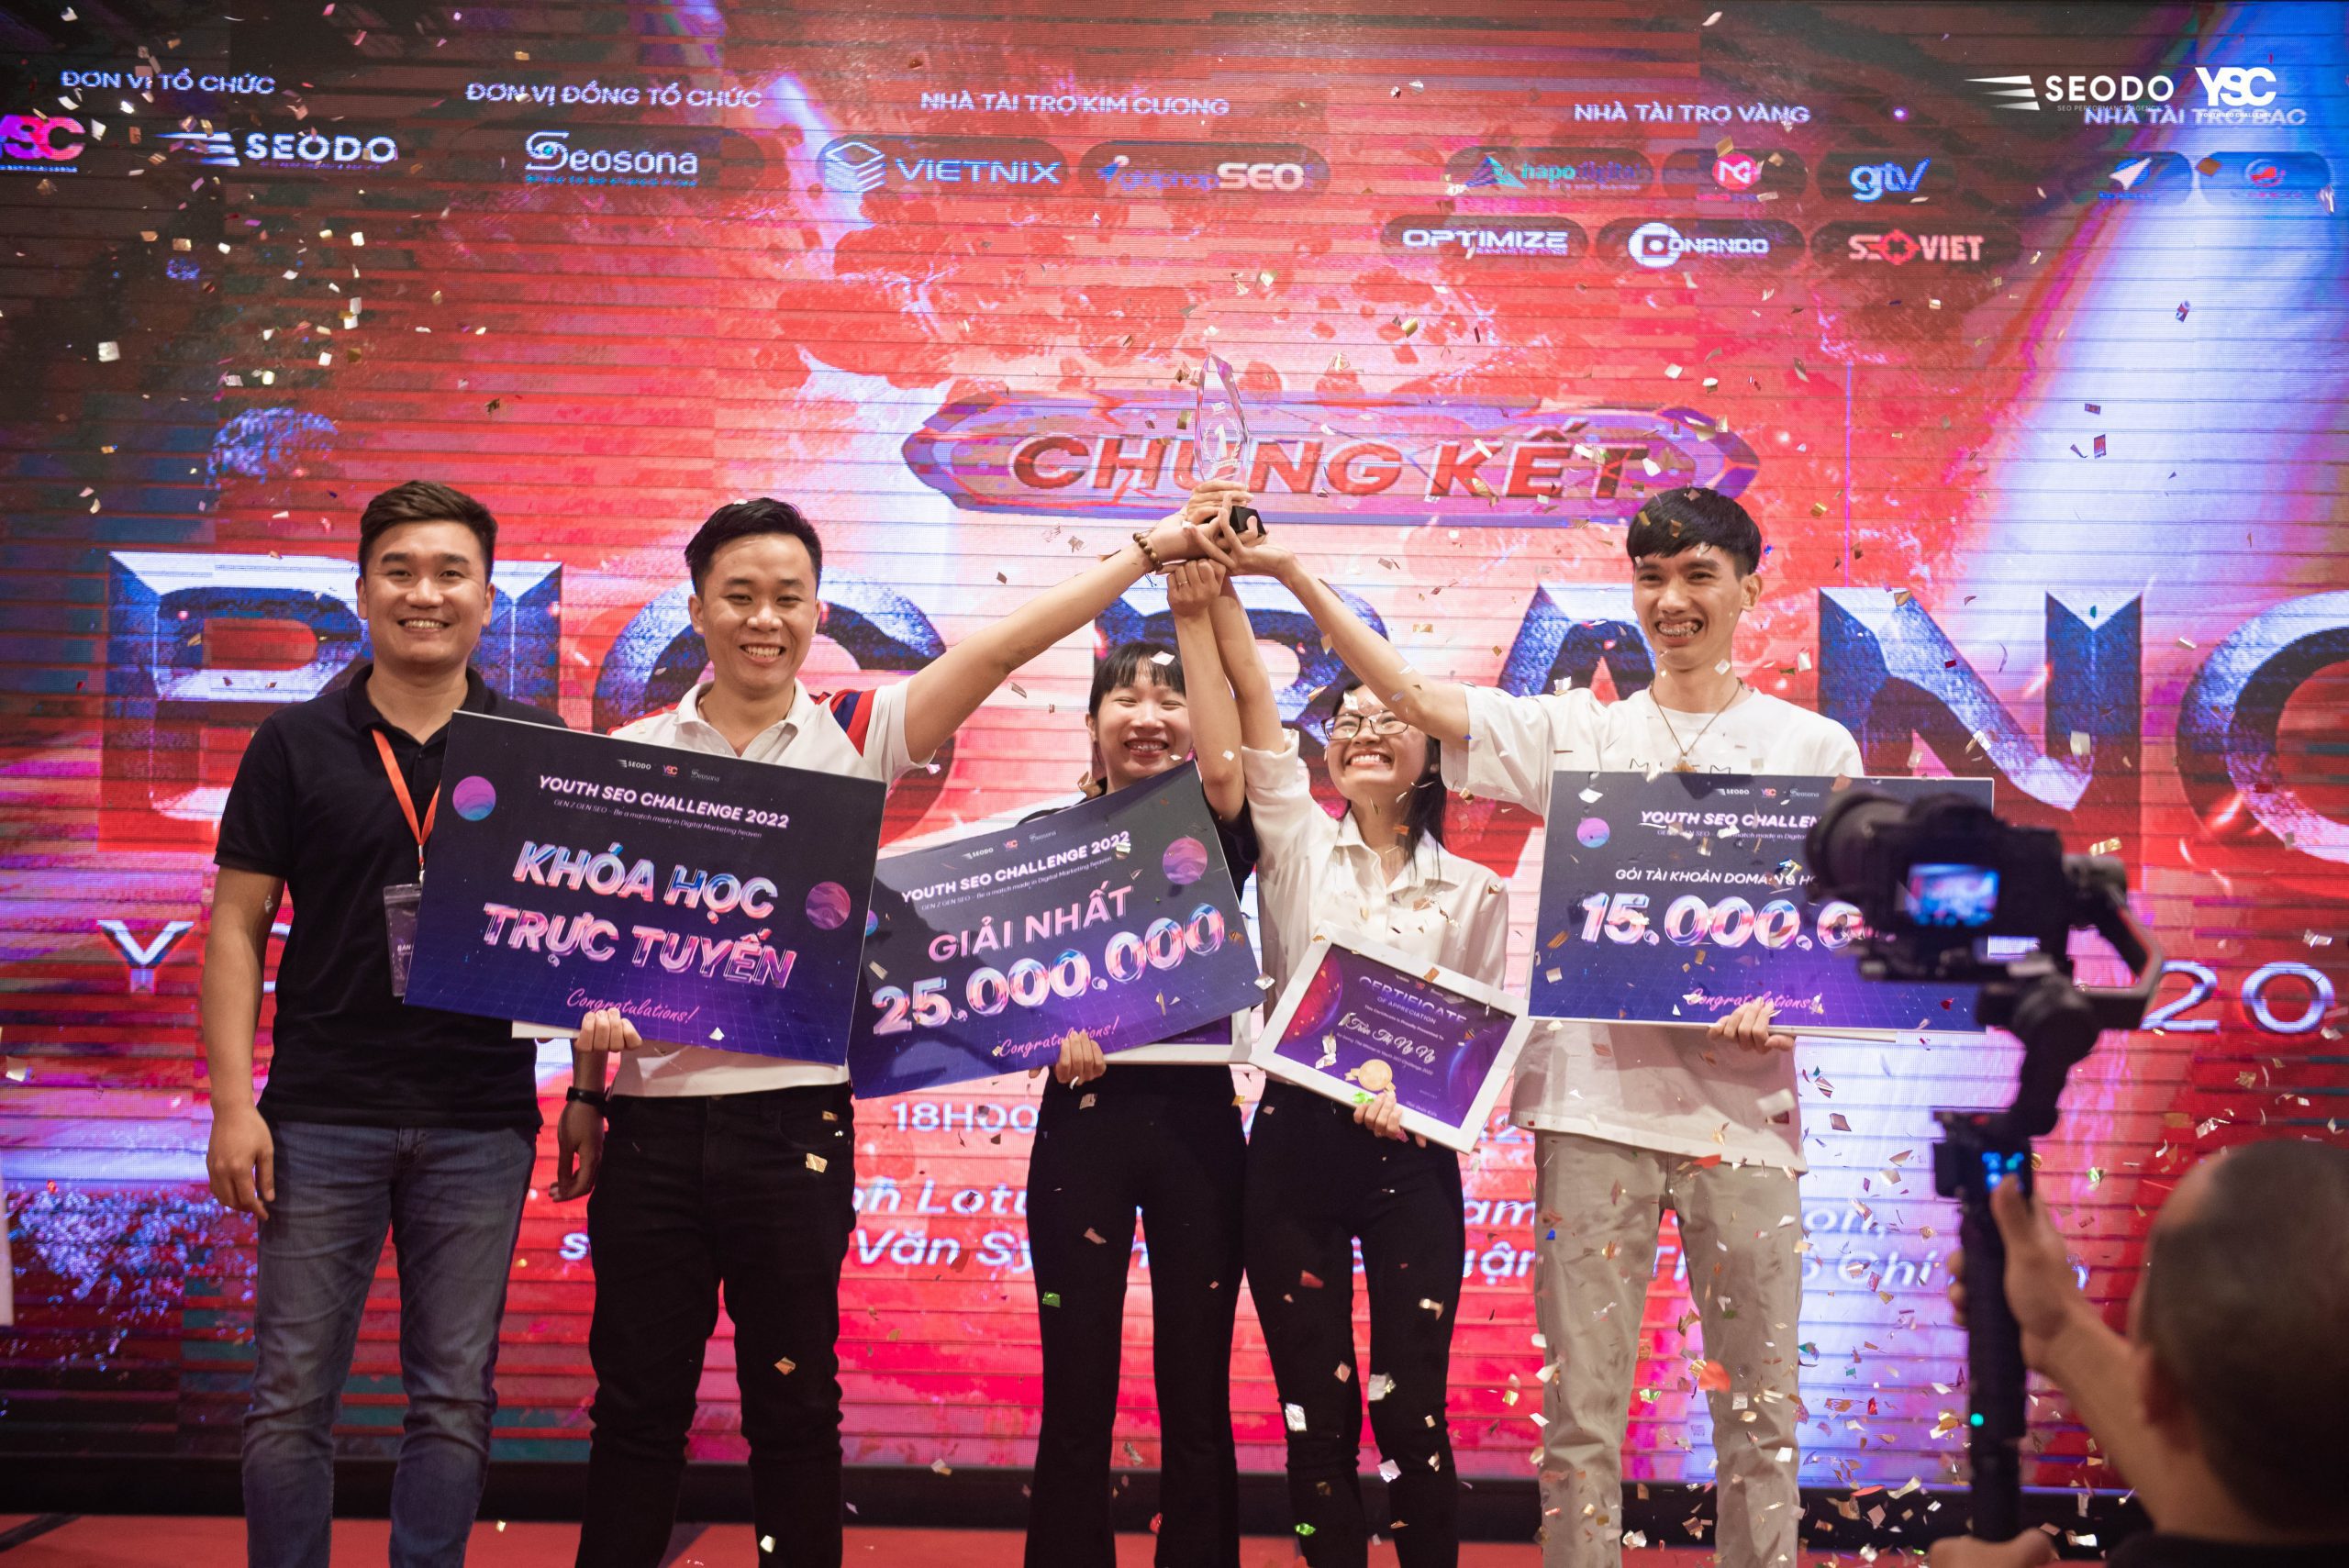 Youth SEO Challenge - Cuộc thi SEO hàng đầu Việt Nam do SEODO tổ chức